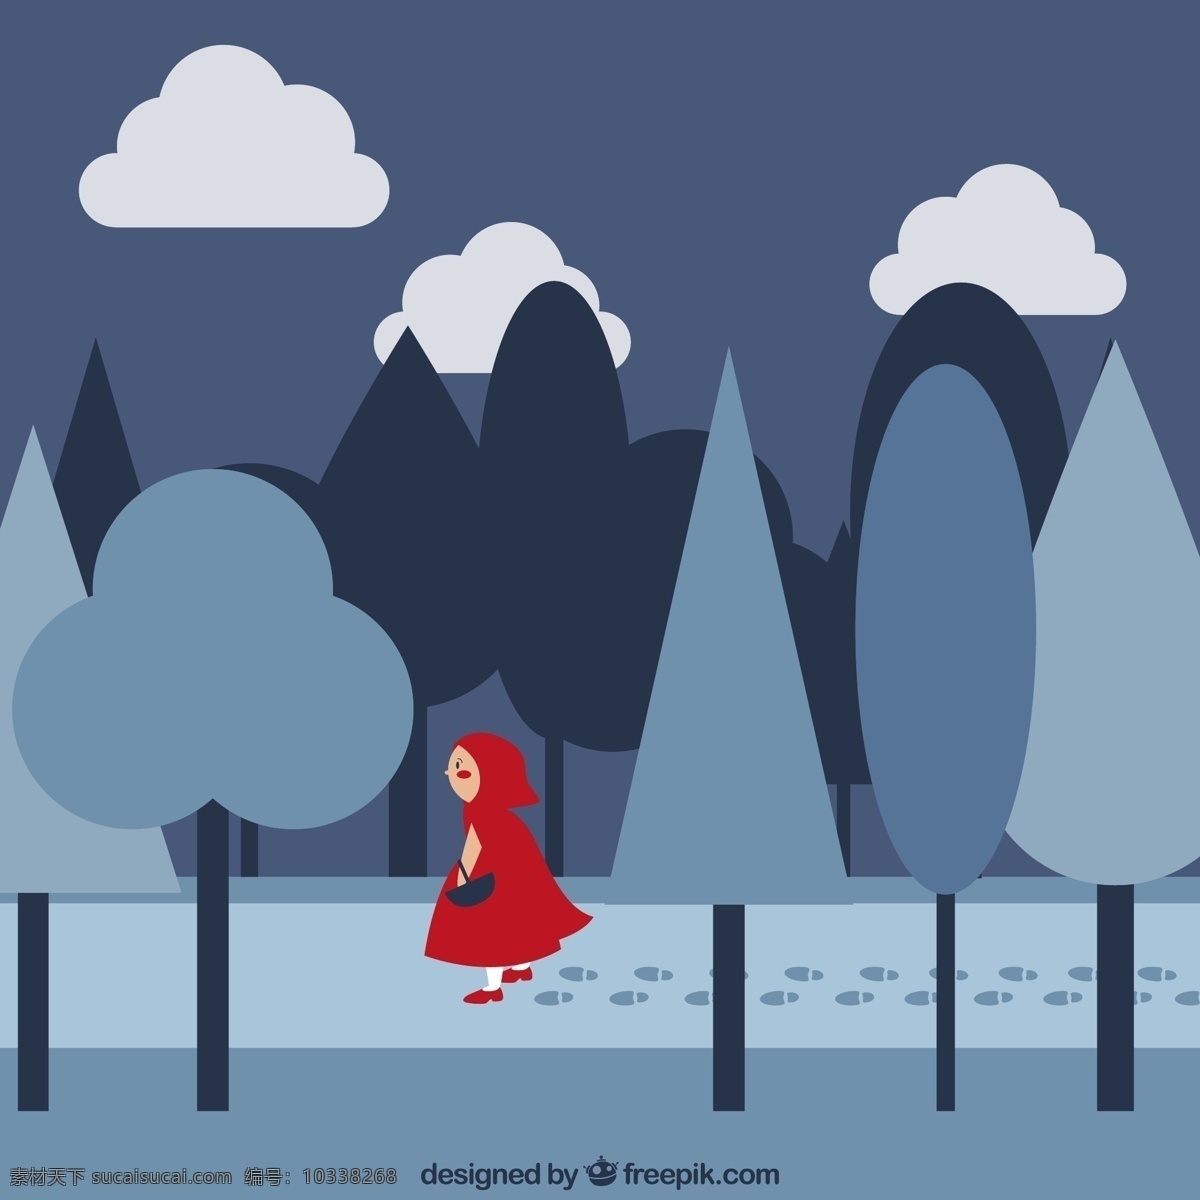 行走 森林 里 小红帽 云朵 脚印 树木 女孩 蓝色